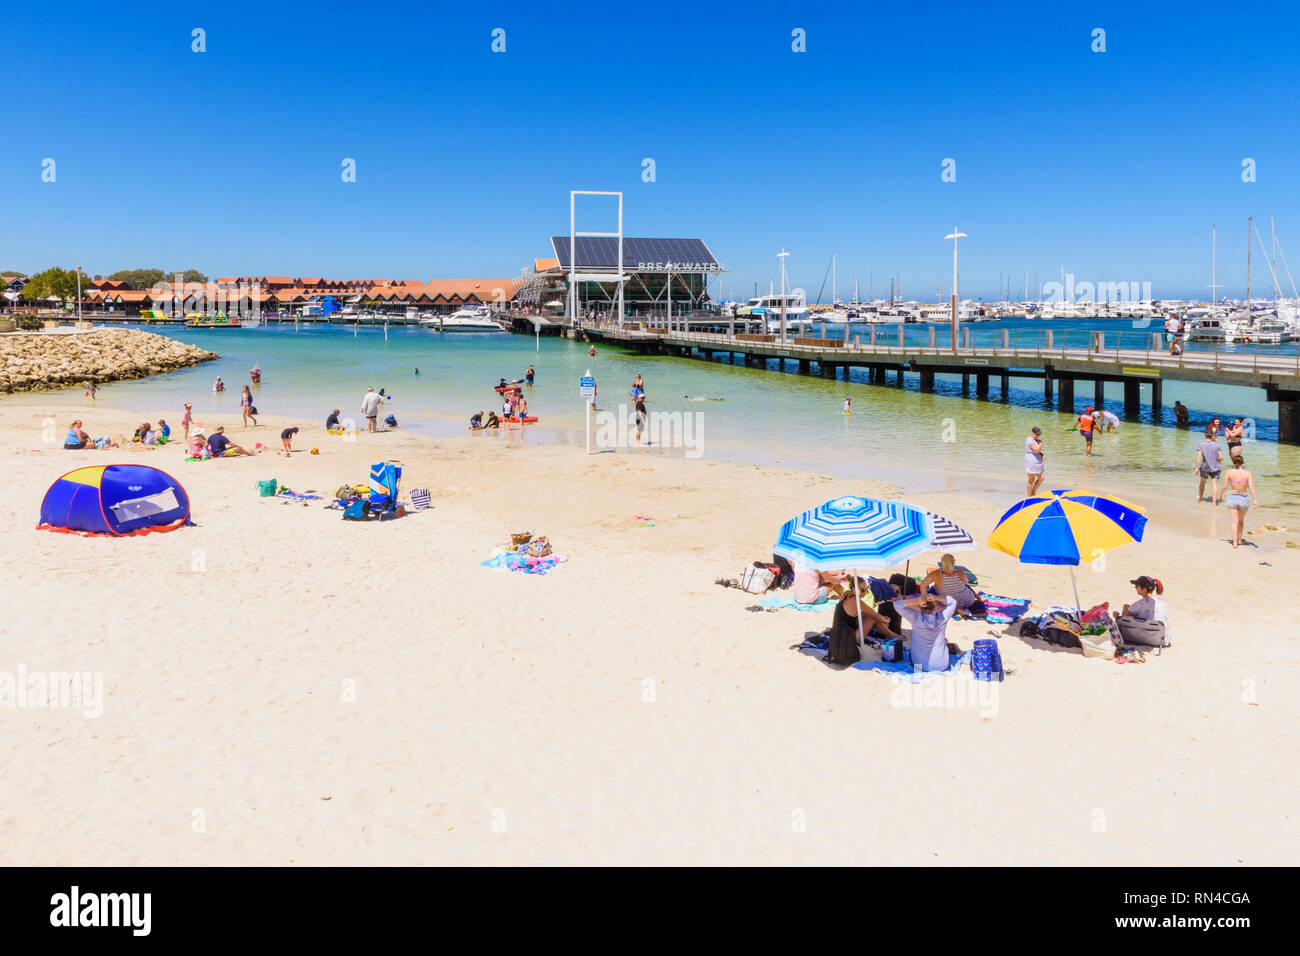 Blick auf den beliebten Familienfreundlicher Strand in Sorrent Quay, Hillarys Boat Harbour Hillarys, Western Australia, Australien Stockfoto